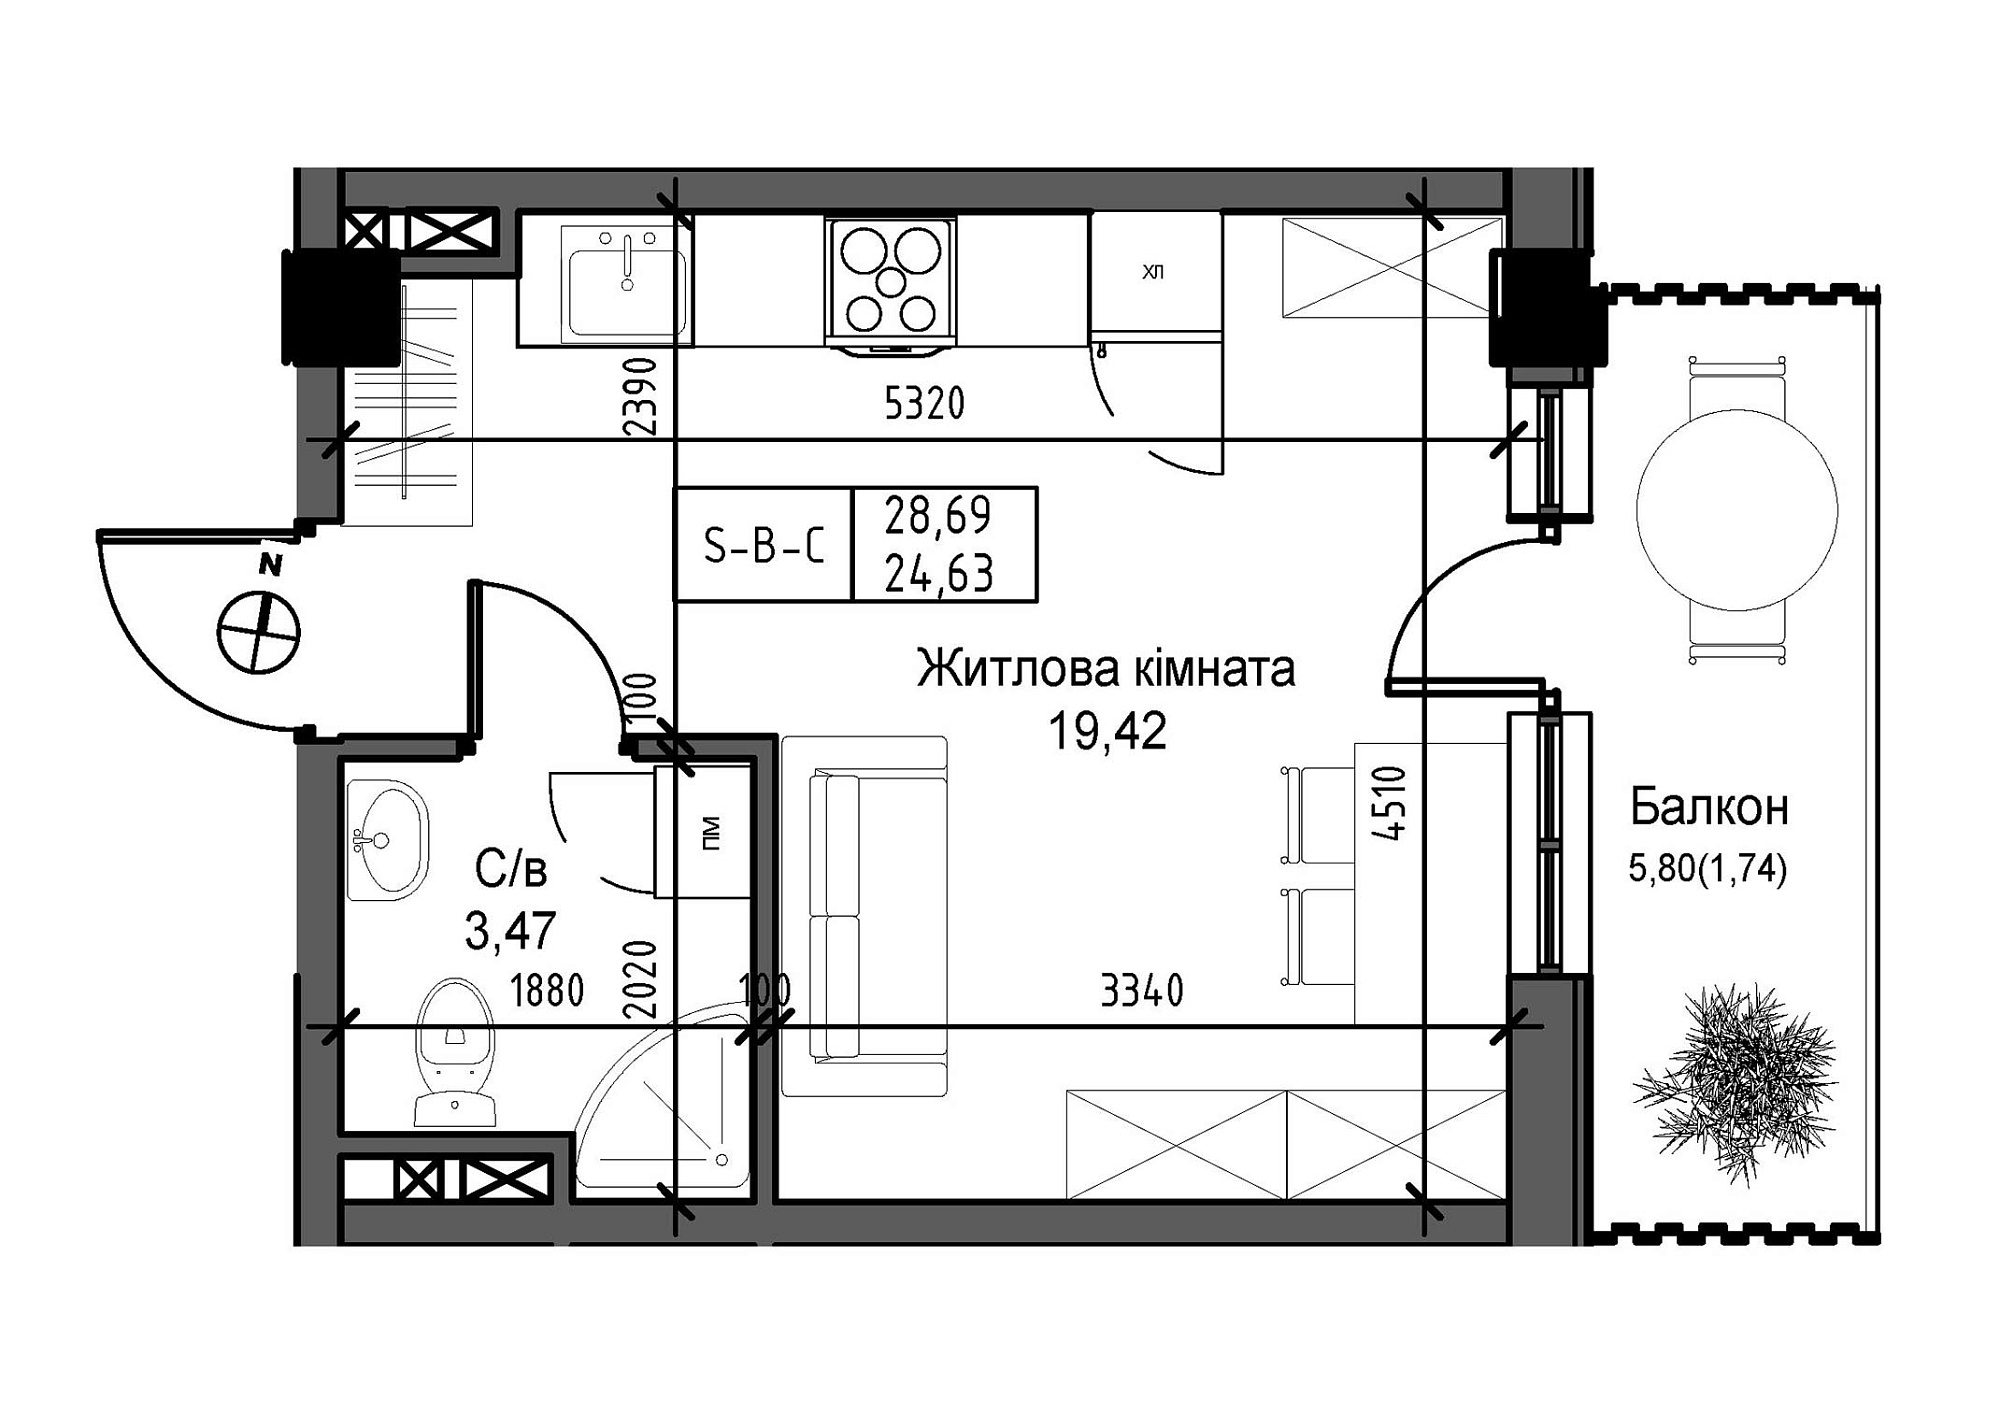 Планировка Smart-квартира площей 24.63м2, UM-007-03/0005.